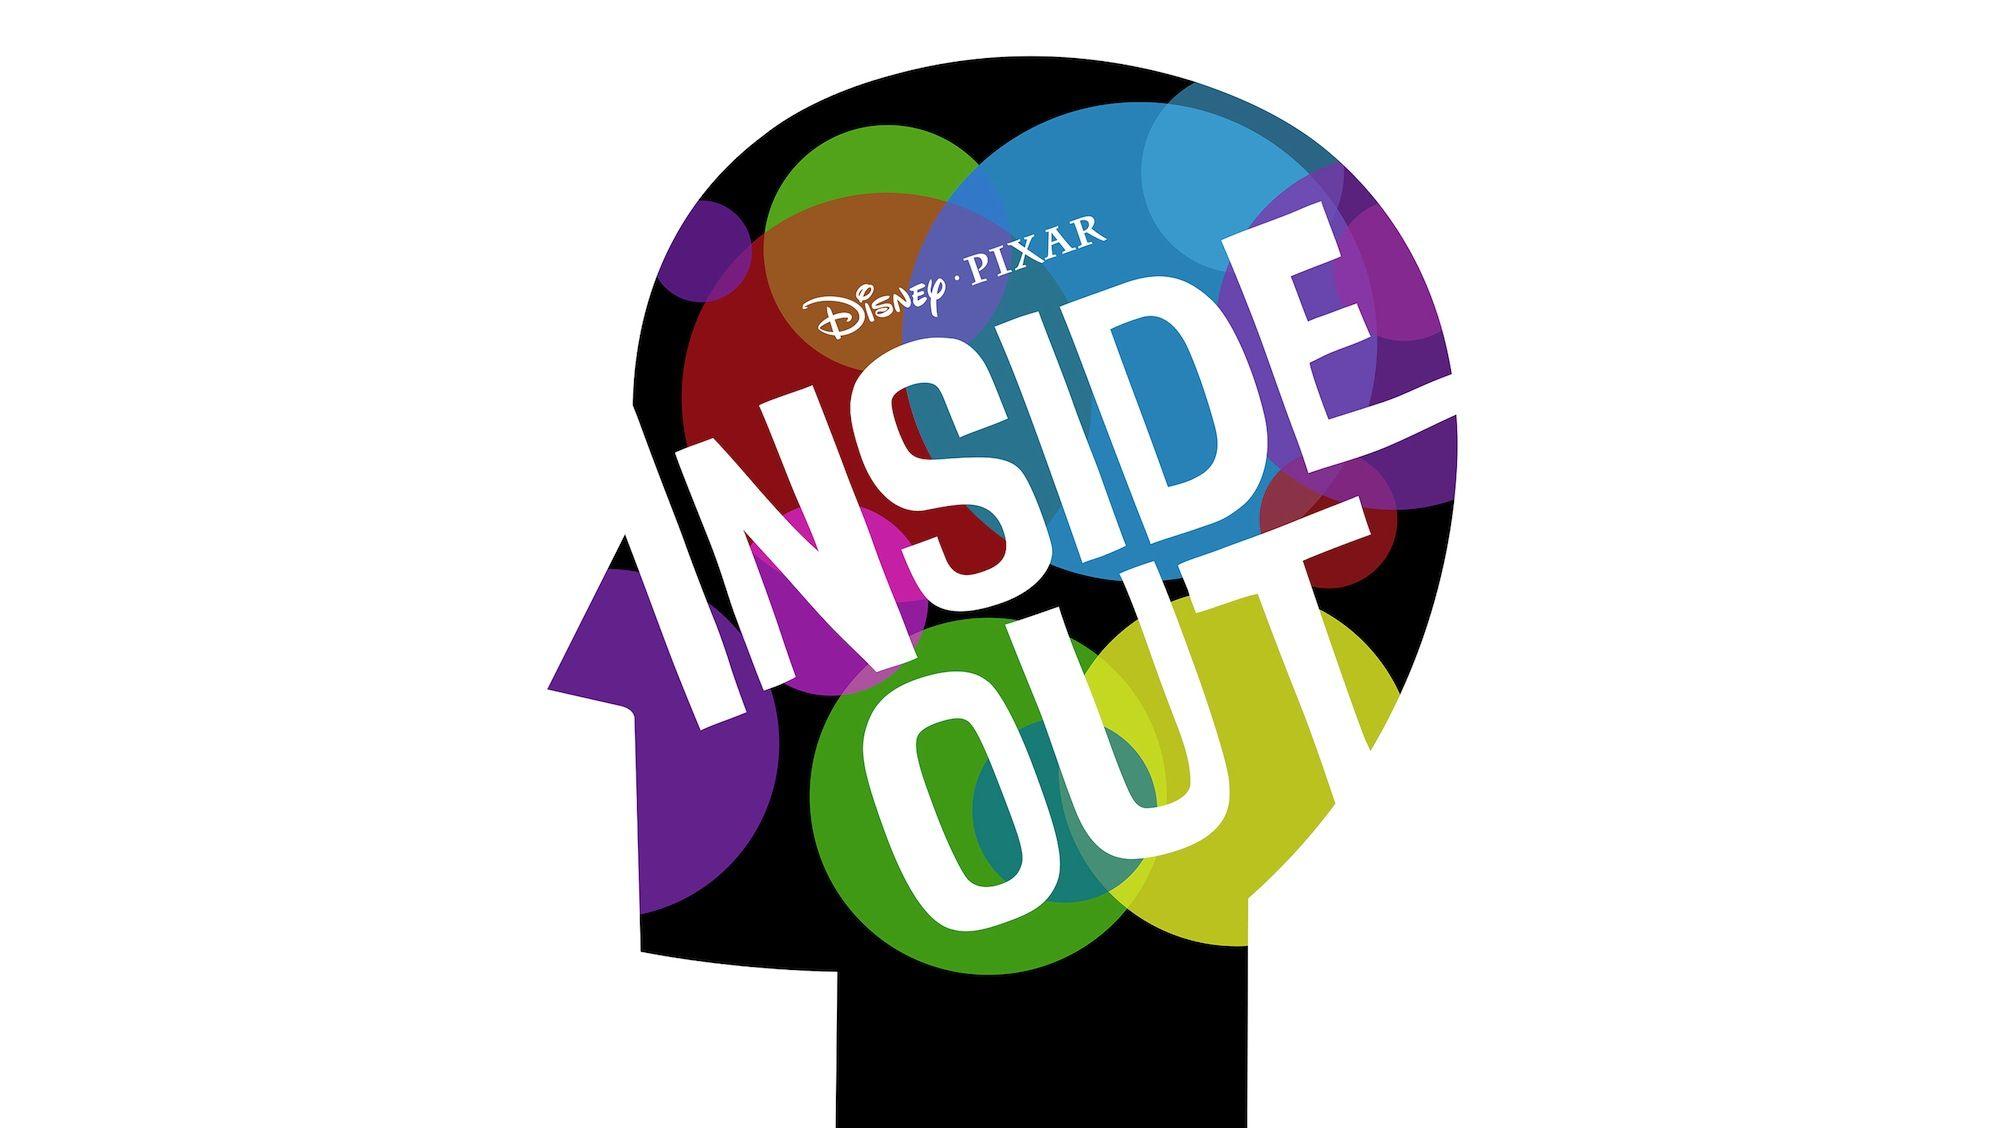 Disney Pixar Inside Out Logo - Wallpaper : logo, Inside Out, brand, font, product, pixar